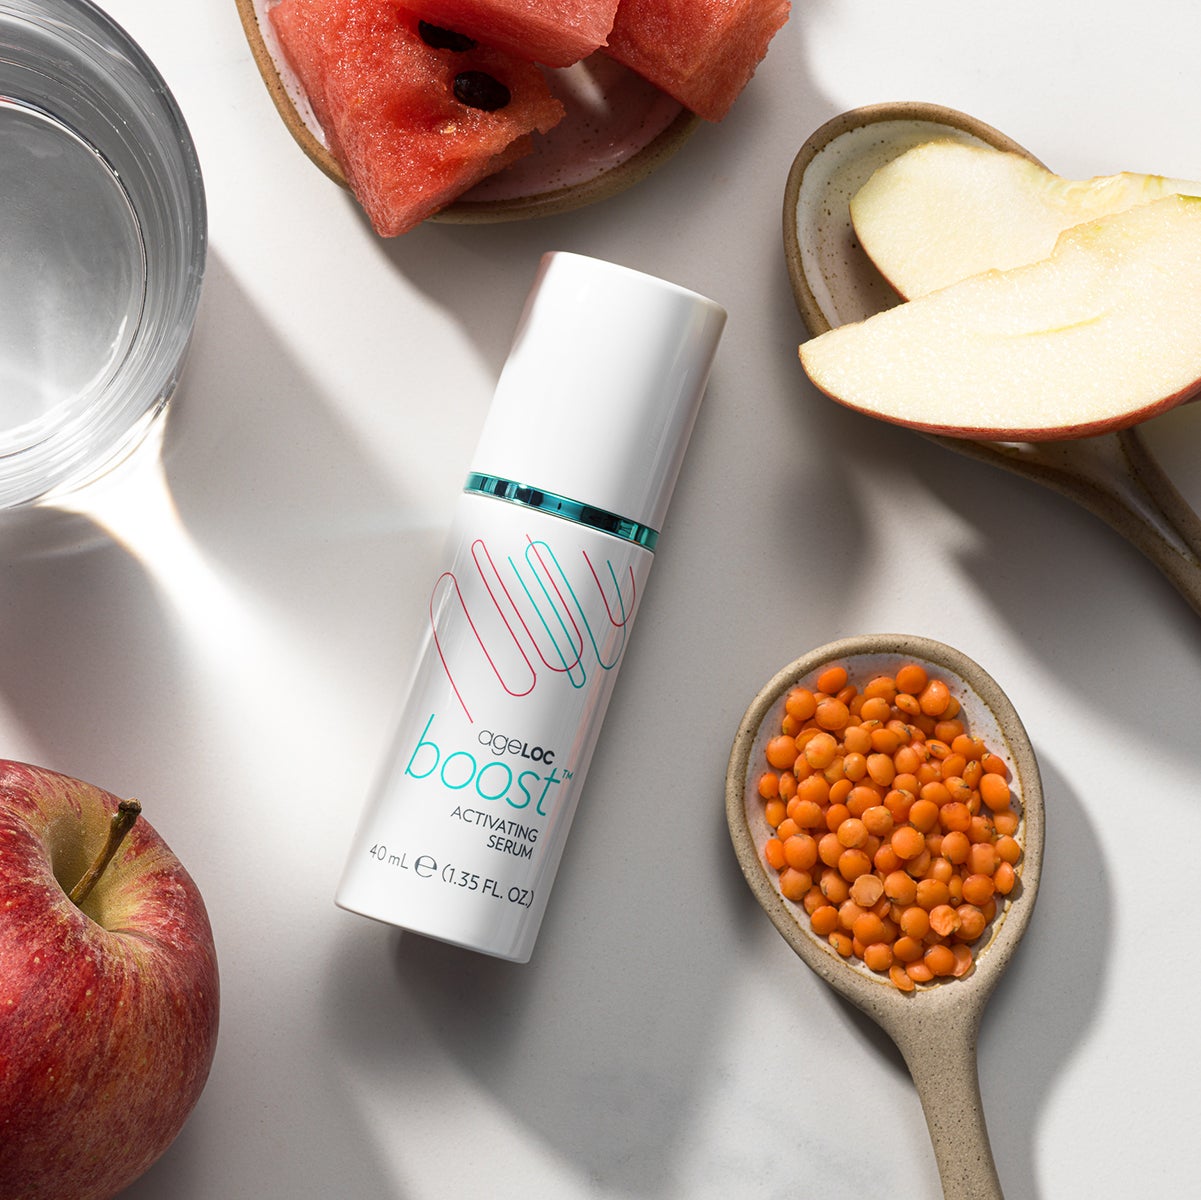 ageLOC Boost Activating Serum von Nu Skin liegt geschlossen auf weißer Oberfläche. Der Spender ist umgeben von verschiedenen Zutaten wie Apfelscheiben und aufgeschnittener Wassermelone.